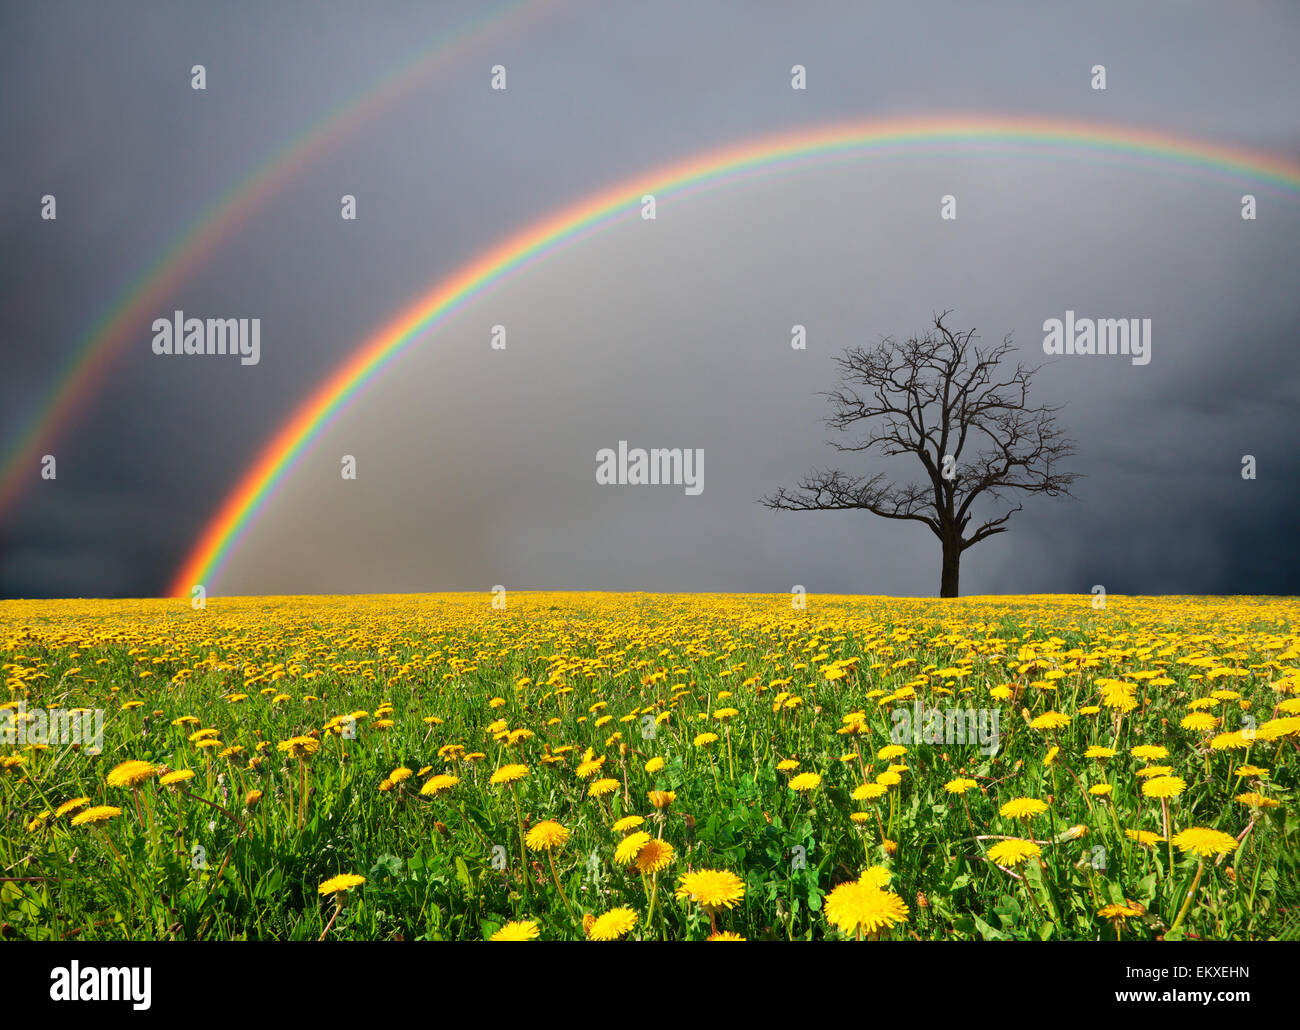 Campo de diente de león y el árbol muerto bajo el cielo nublado con arco iris Foto de stock